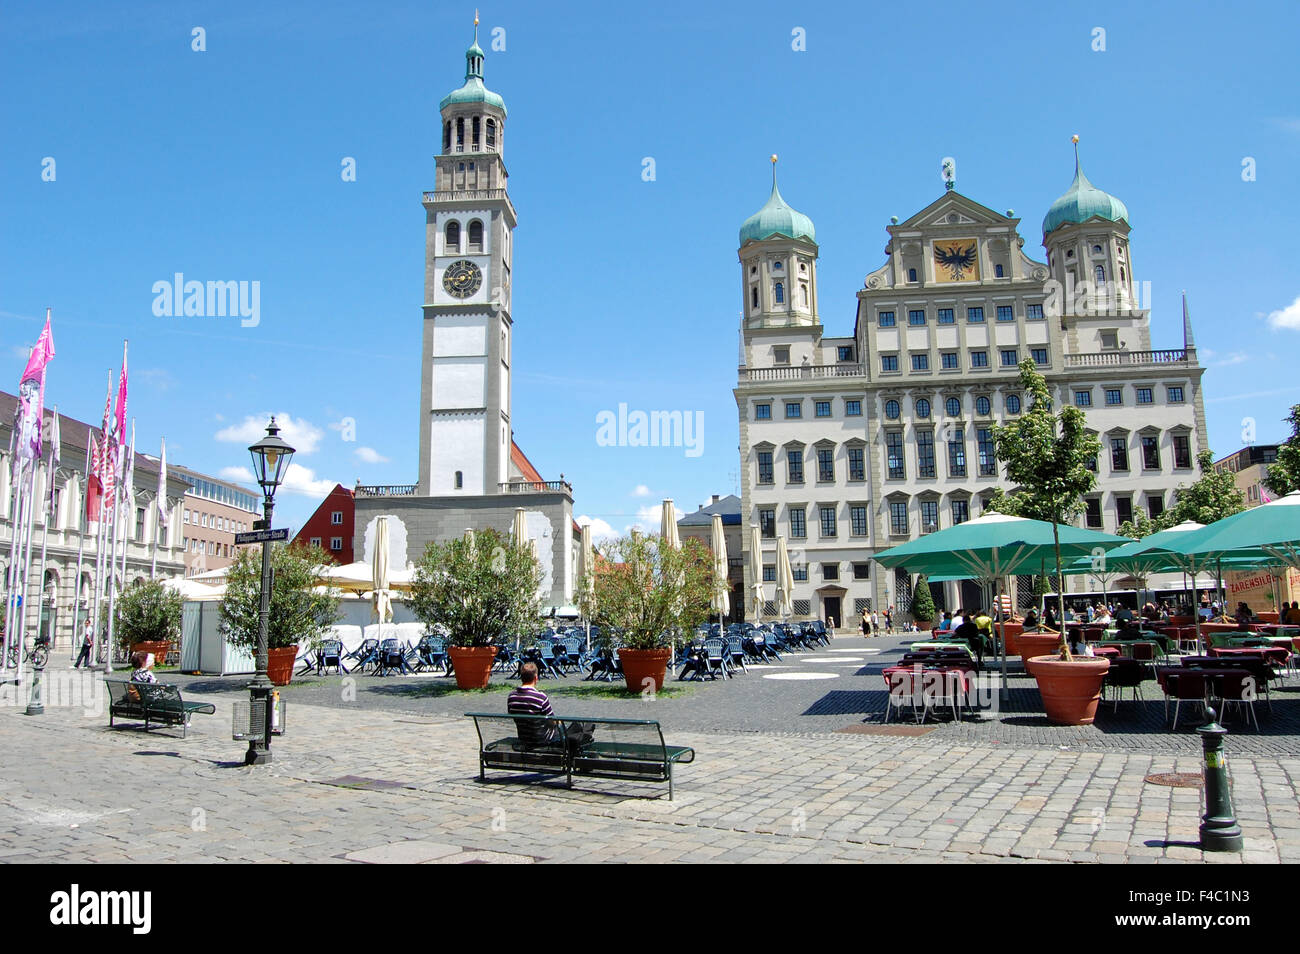 Der Perlachturm und das Rathaus in Rathausplatz in Augsburg, Deutschland. Stockfoto